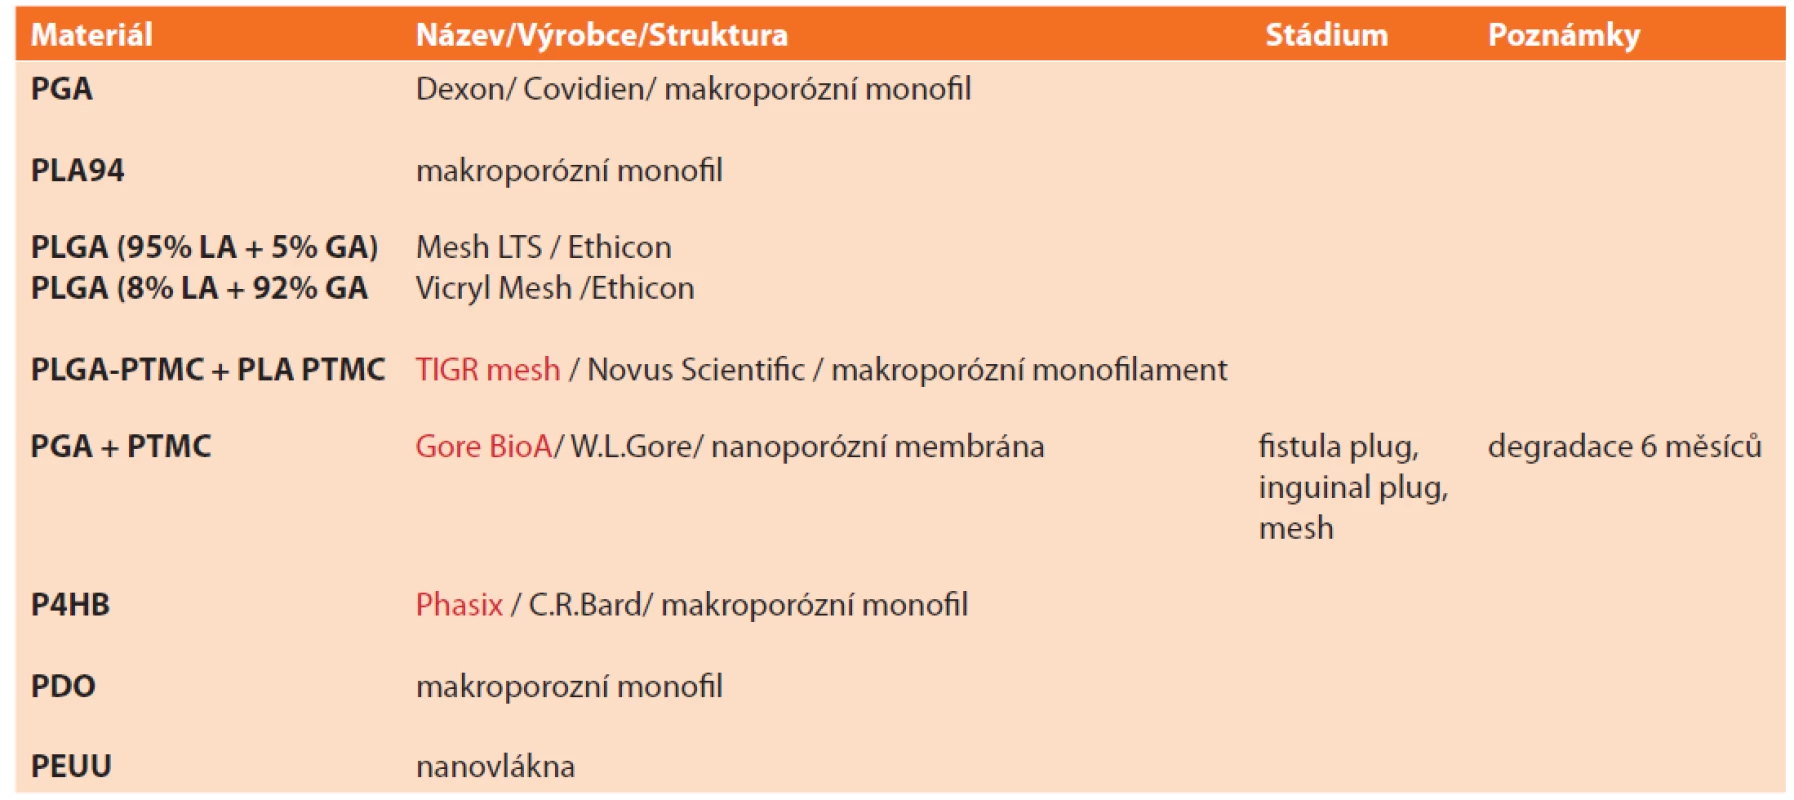 Přehled vstřebatelných syntetických implantátů<br>
Tab. 1: Overview of absorbable synthetic implants